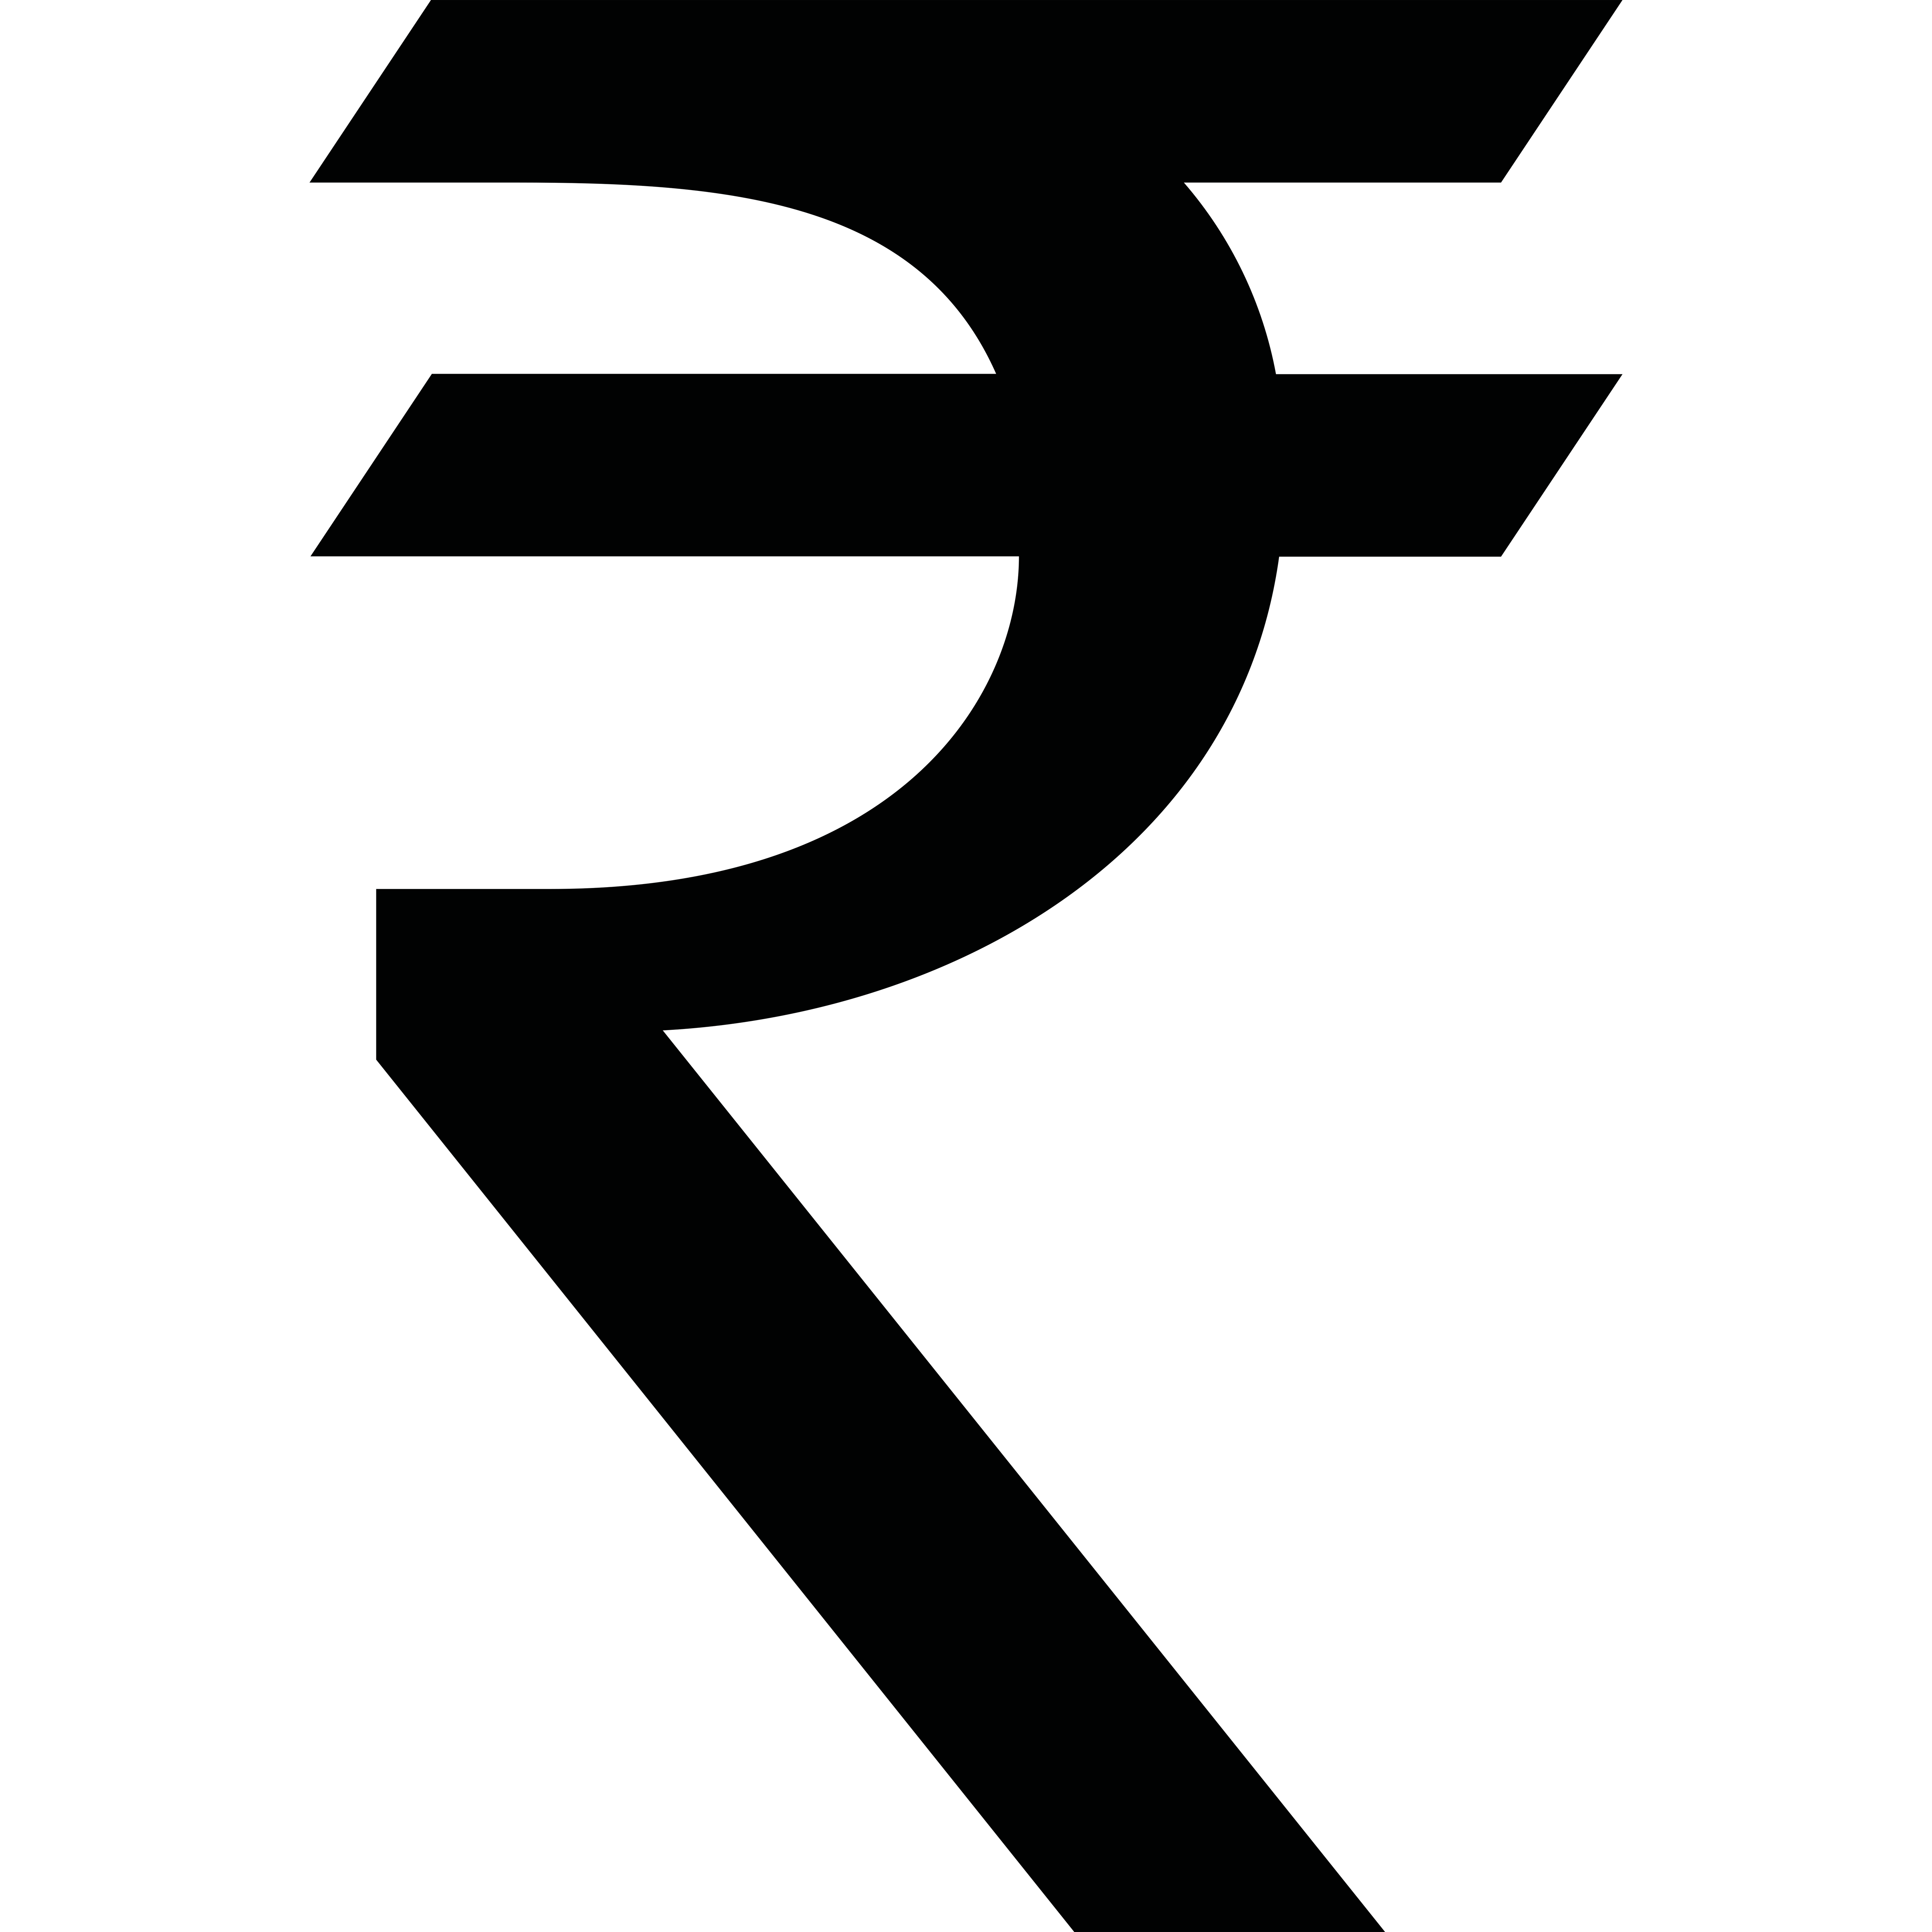 Rupees Symbol Transparent Image